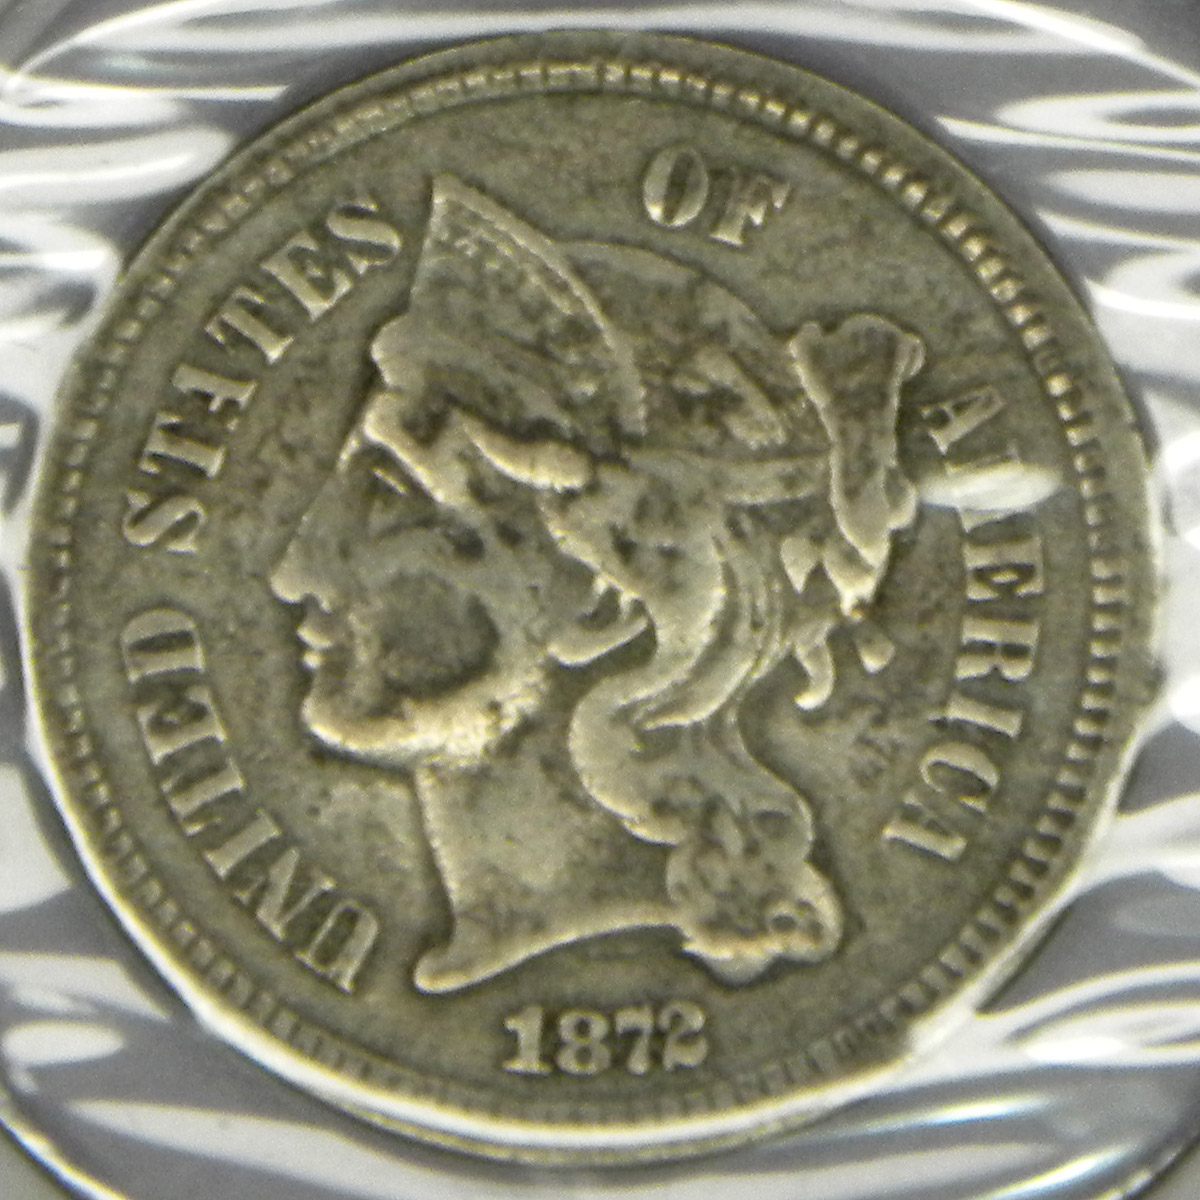 1872 3-cent nickel coin (obverse)